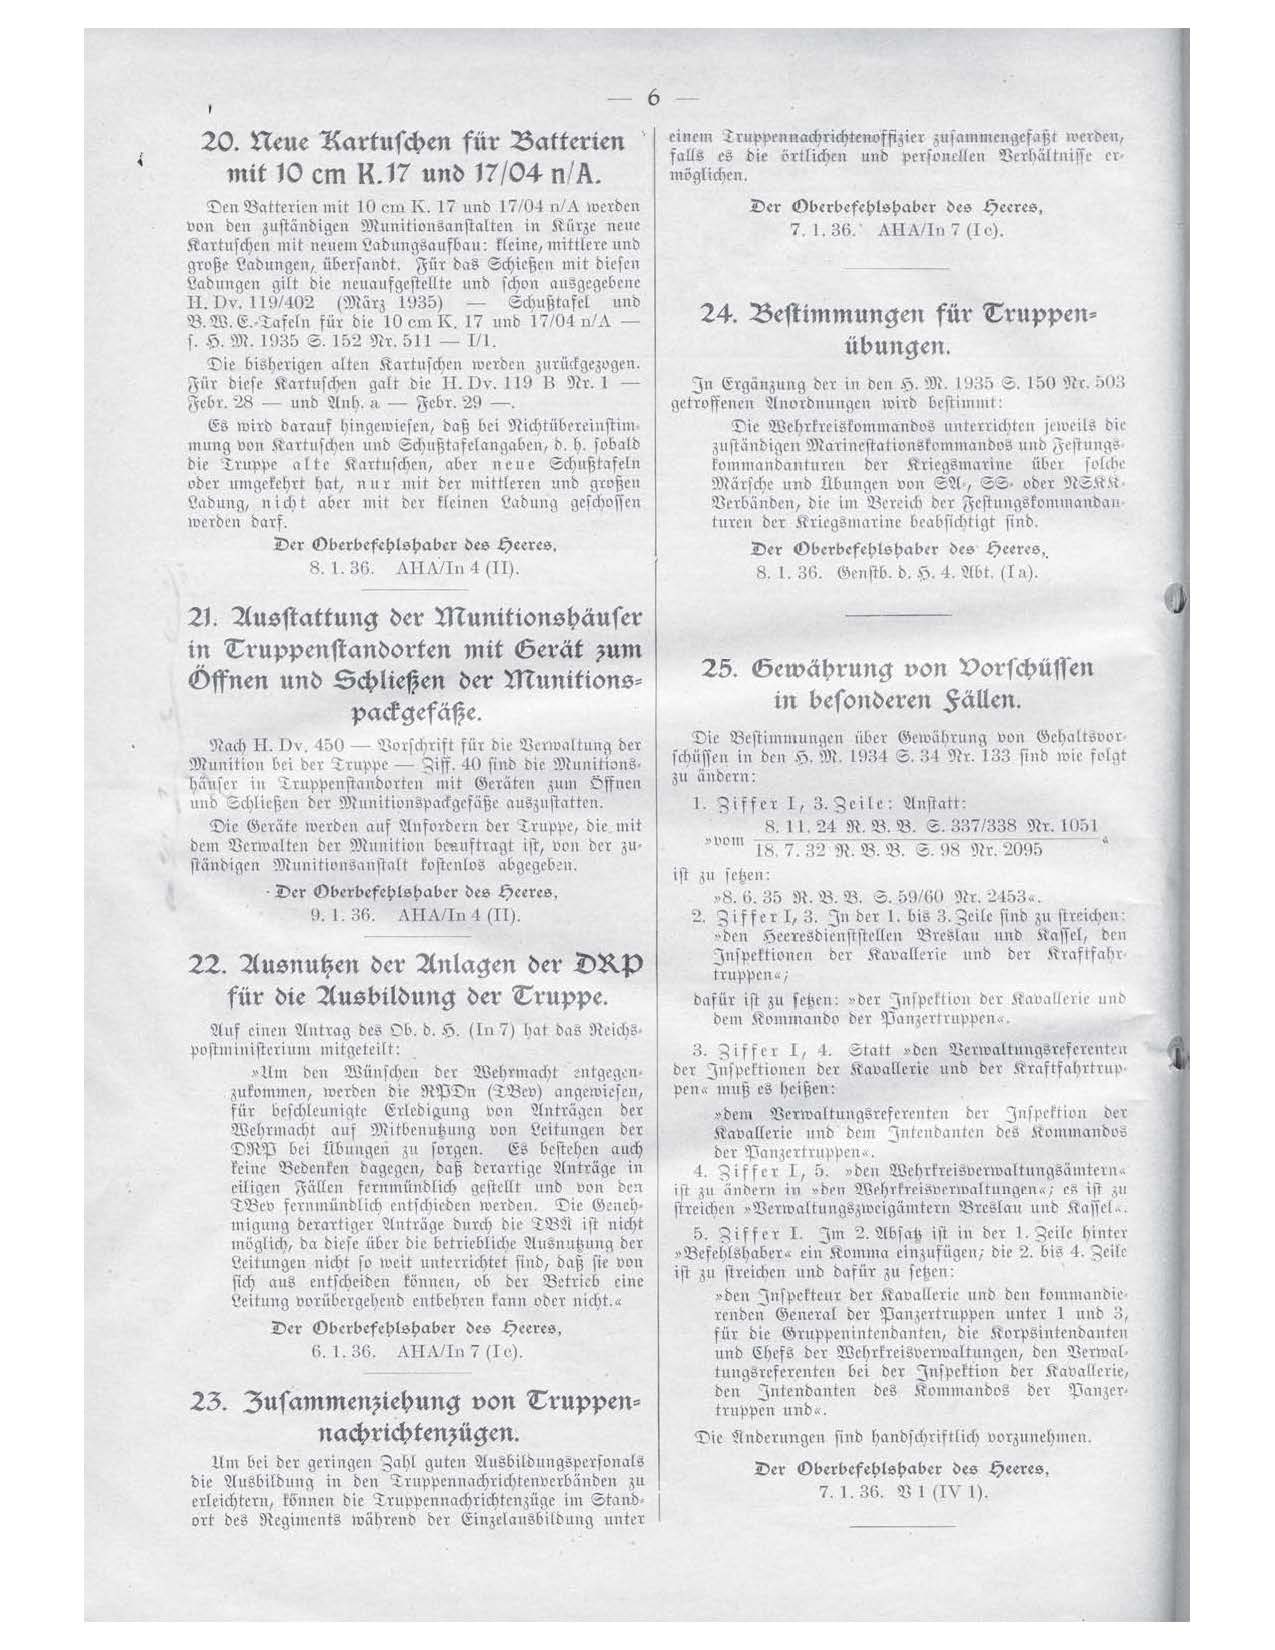 Allgemeine Heeresmitteilungen 1936.jpg